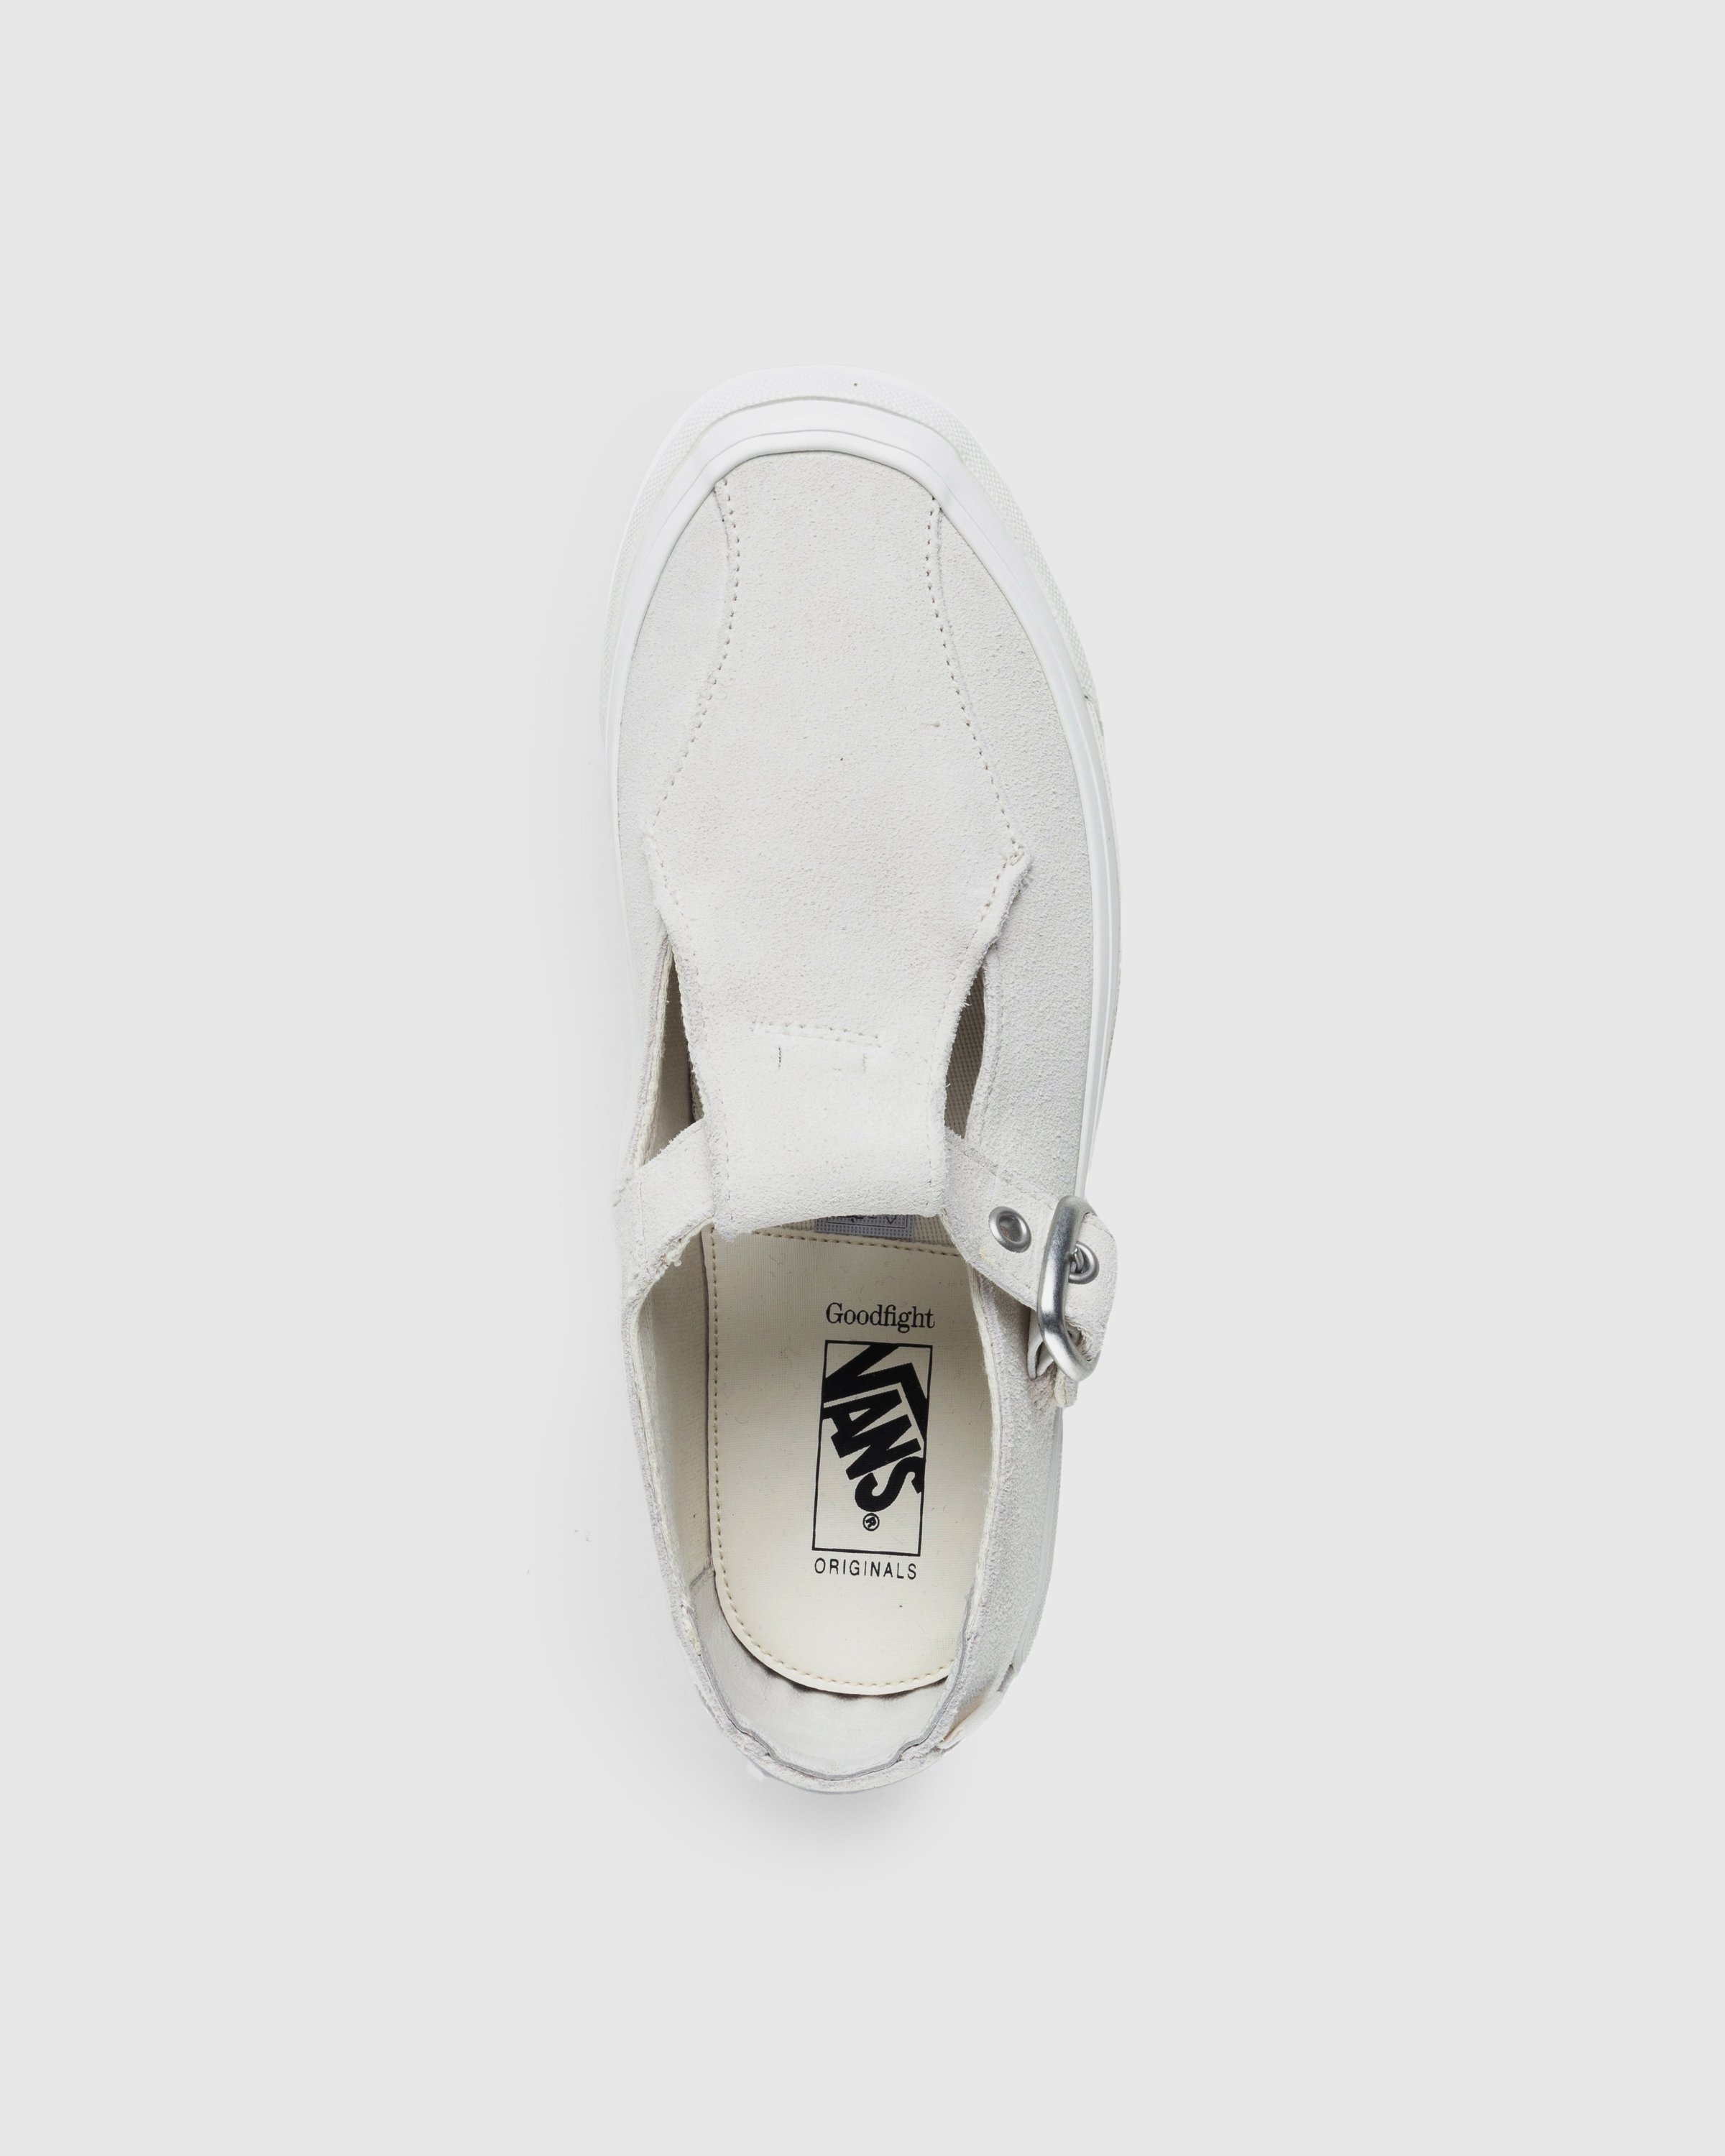 Vans - OG Style 93 LX Marshmallow - Footwear - White - Image 6